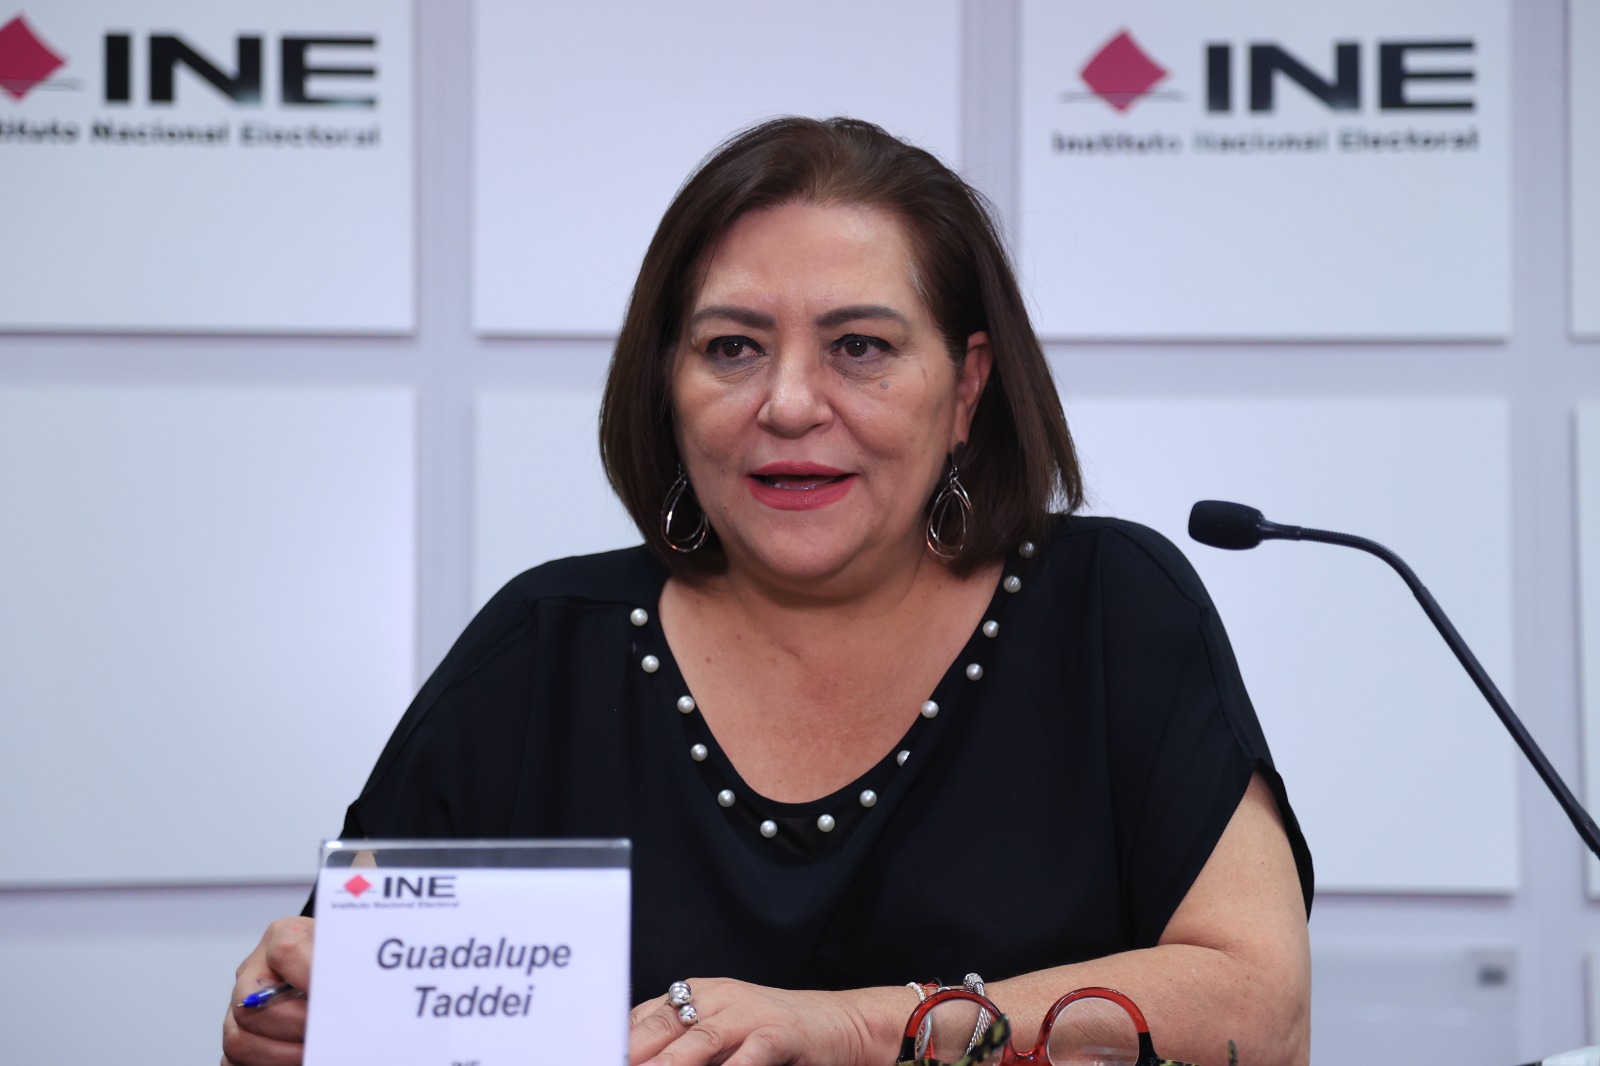 Conferencia de Prensa que ofreció el día de hoy la Consejera Presidenta Guadalupe  Taddei Zavala - Central Electoral